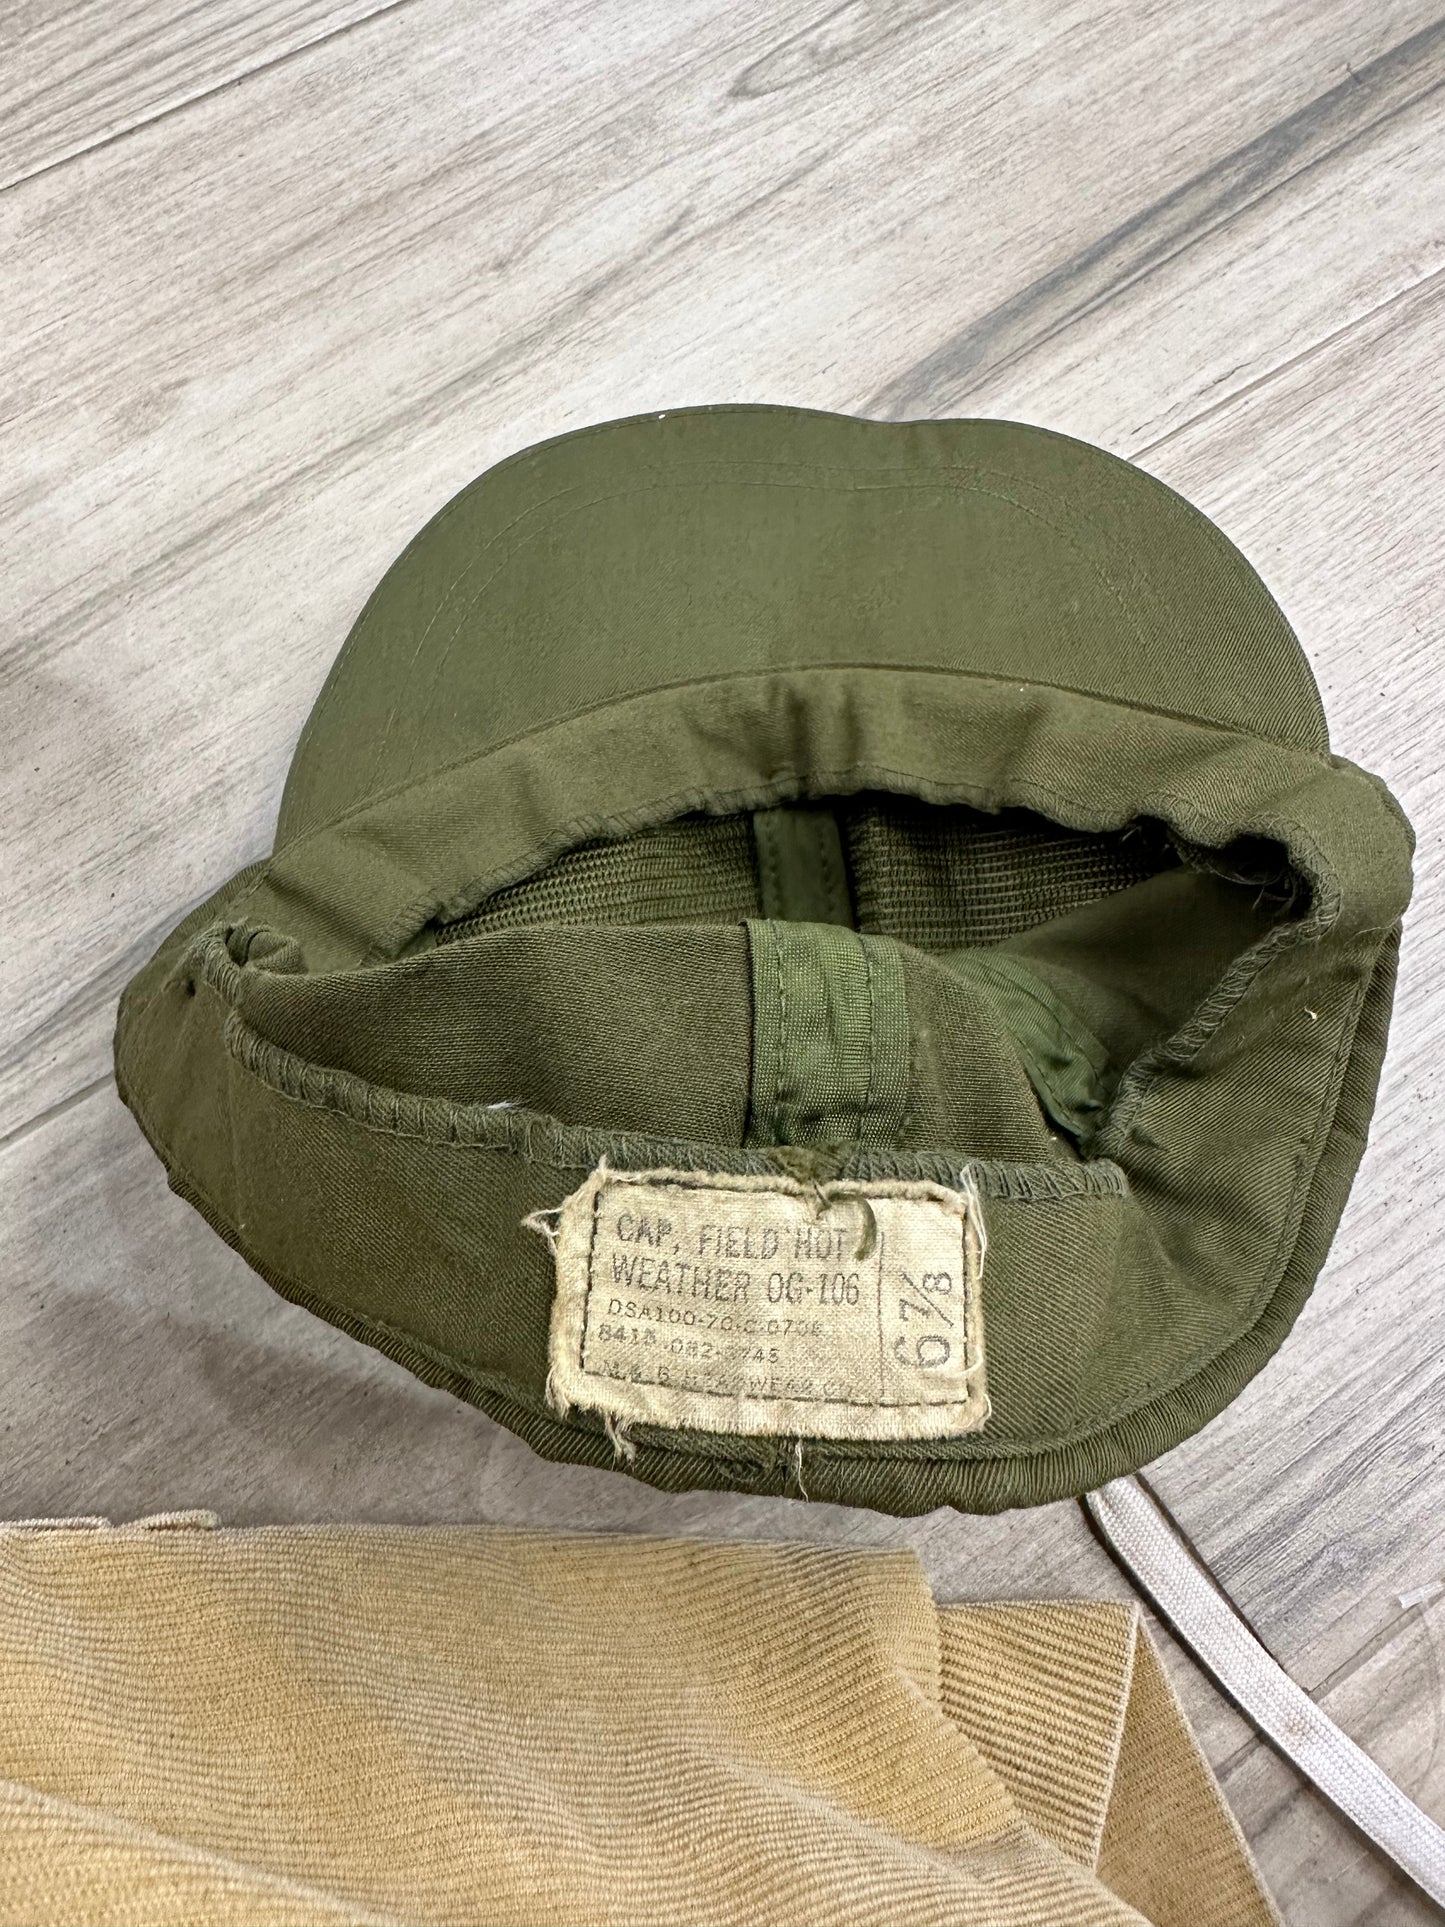 Vietnam Era OG-106 Fitted Hat- 6 1/8